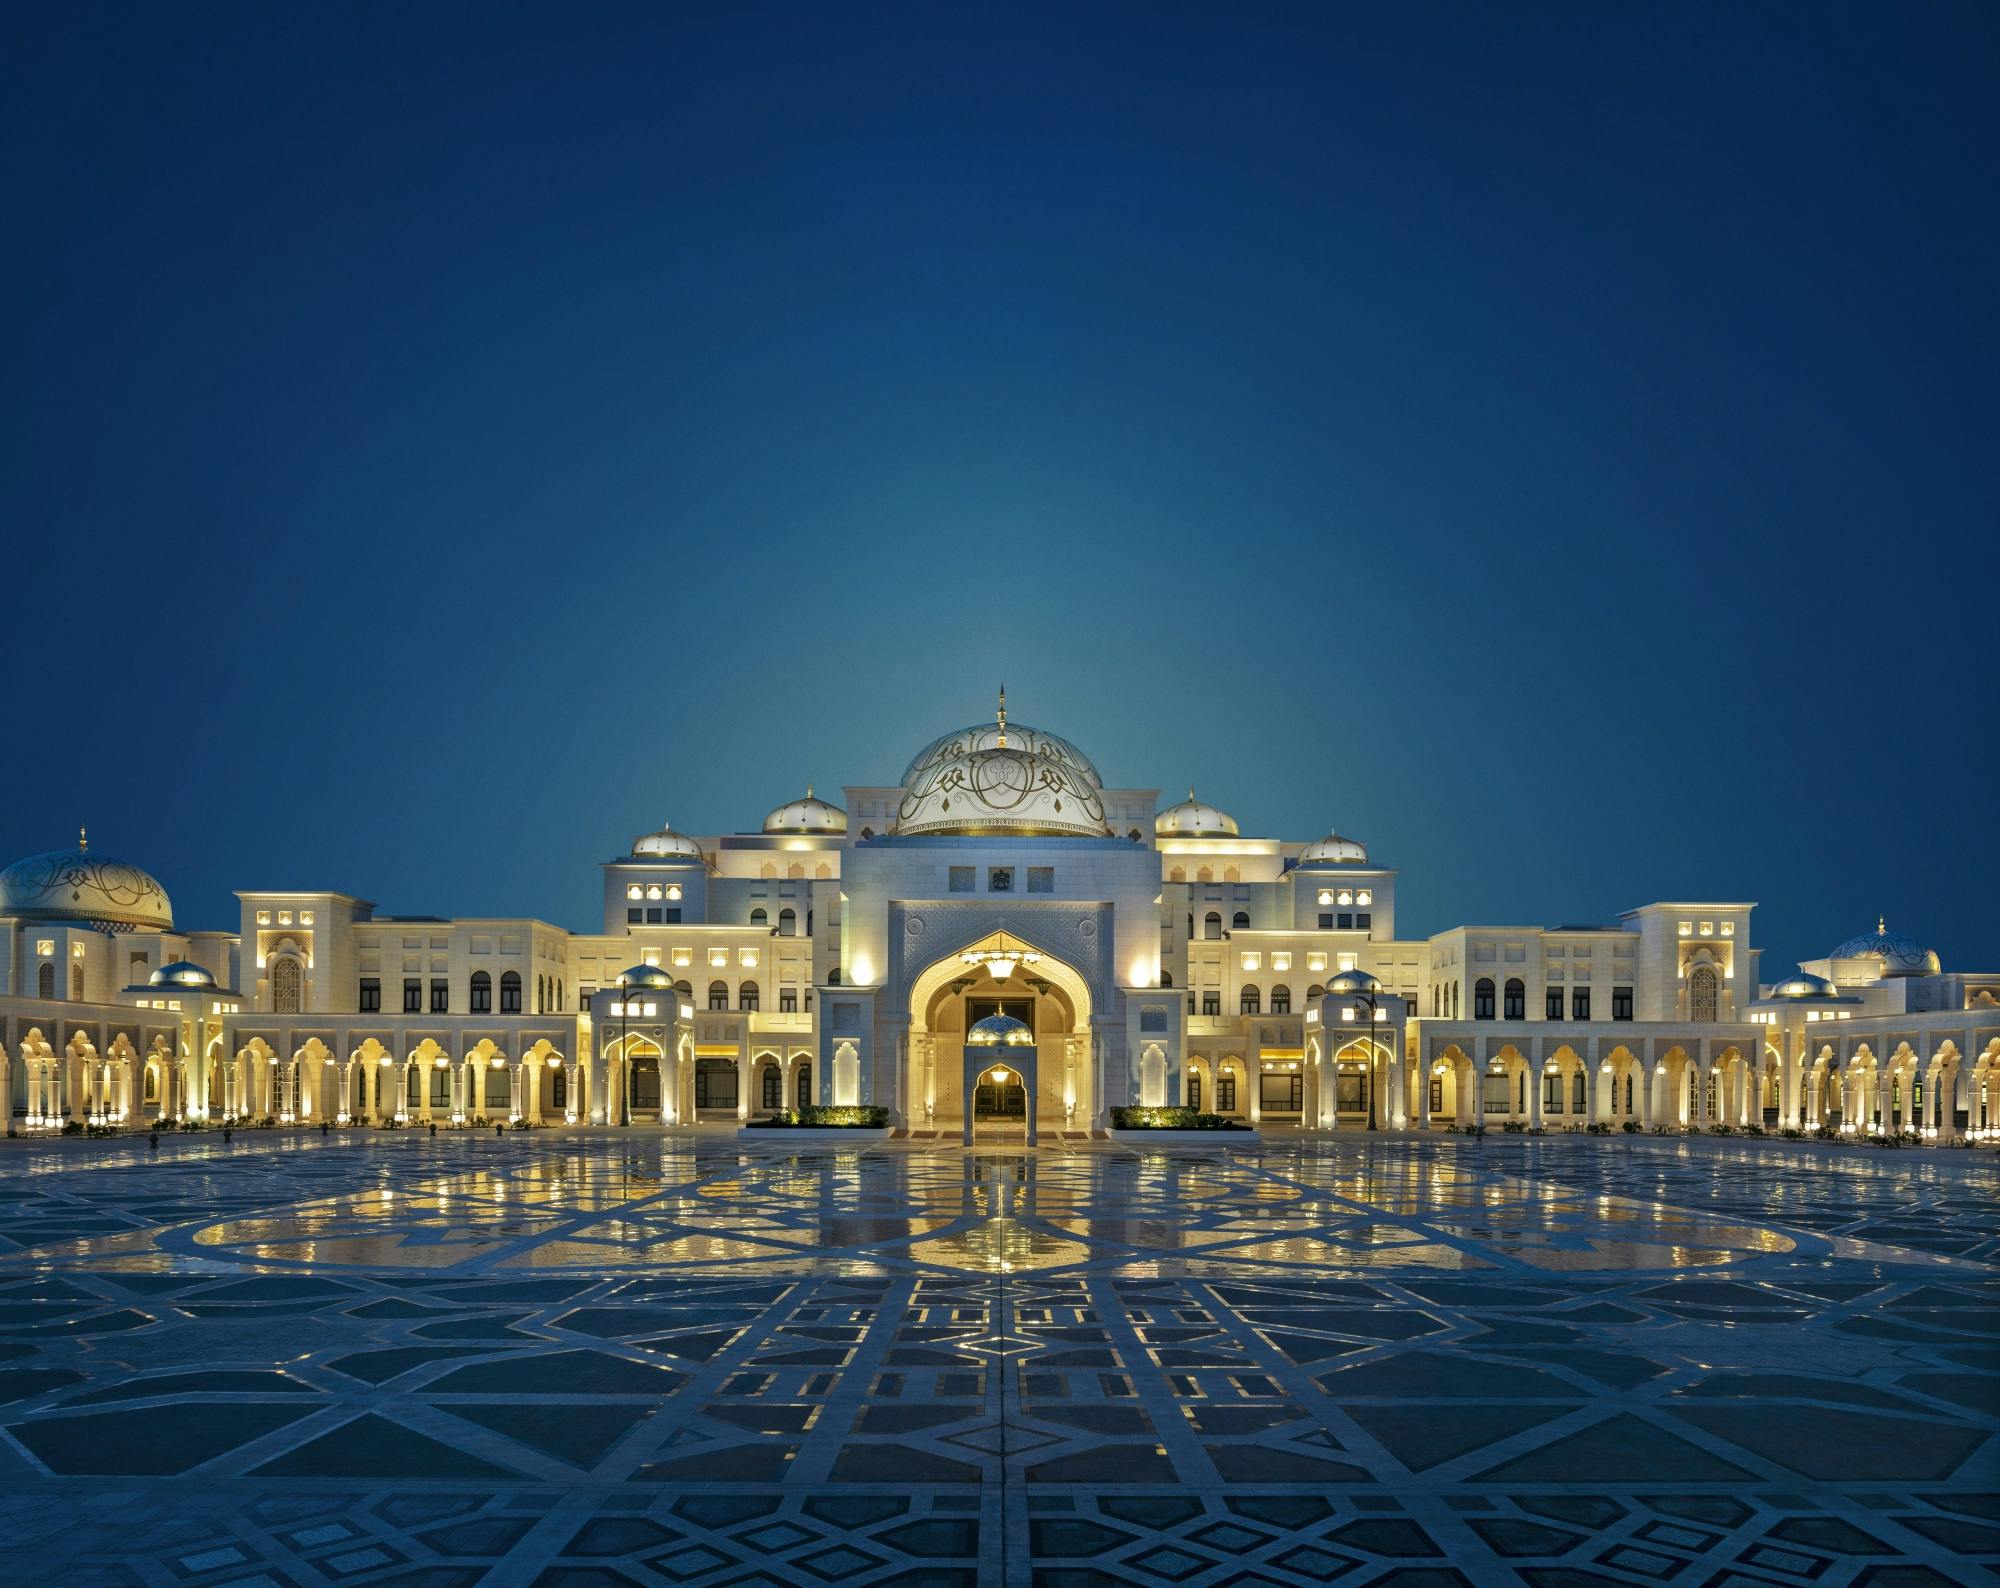 Bezoek aan Qasr al Watan en gouden cappuccino in Emirates Palace